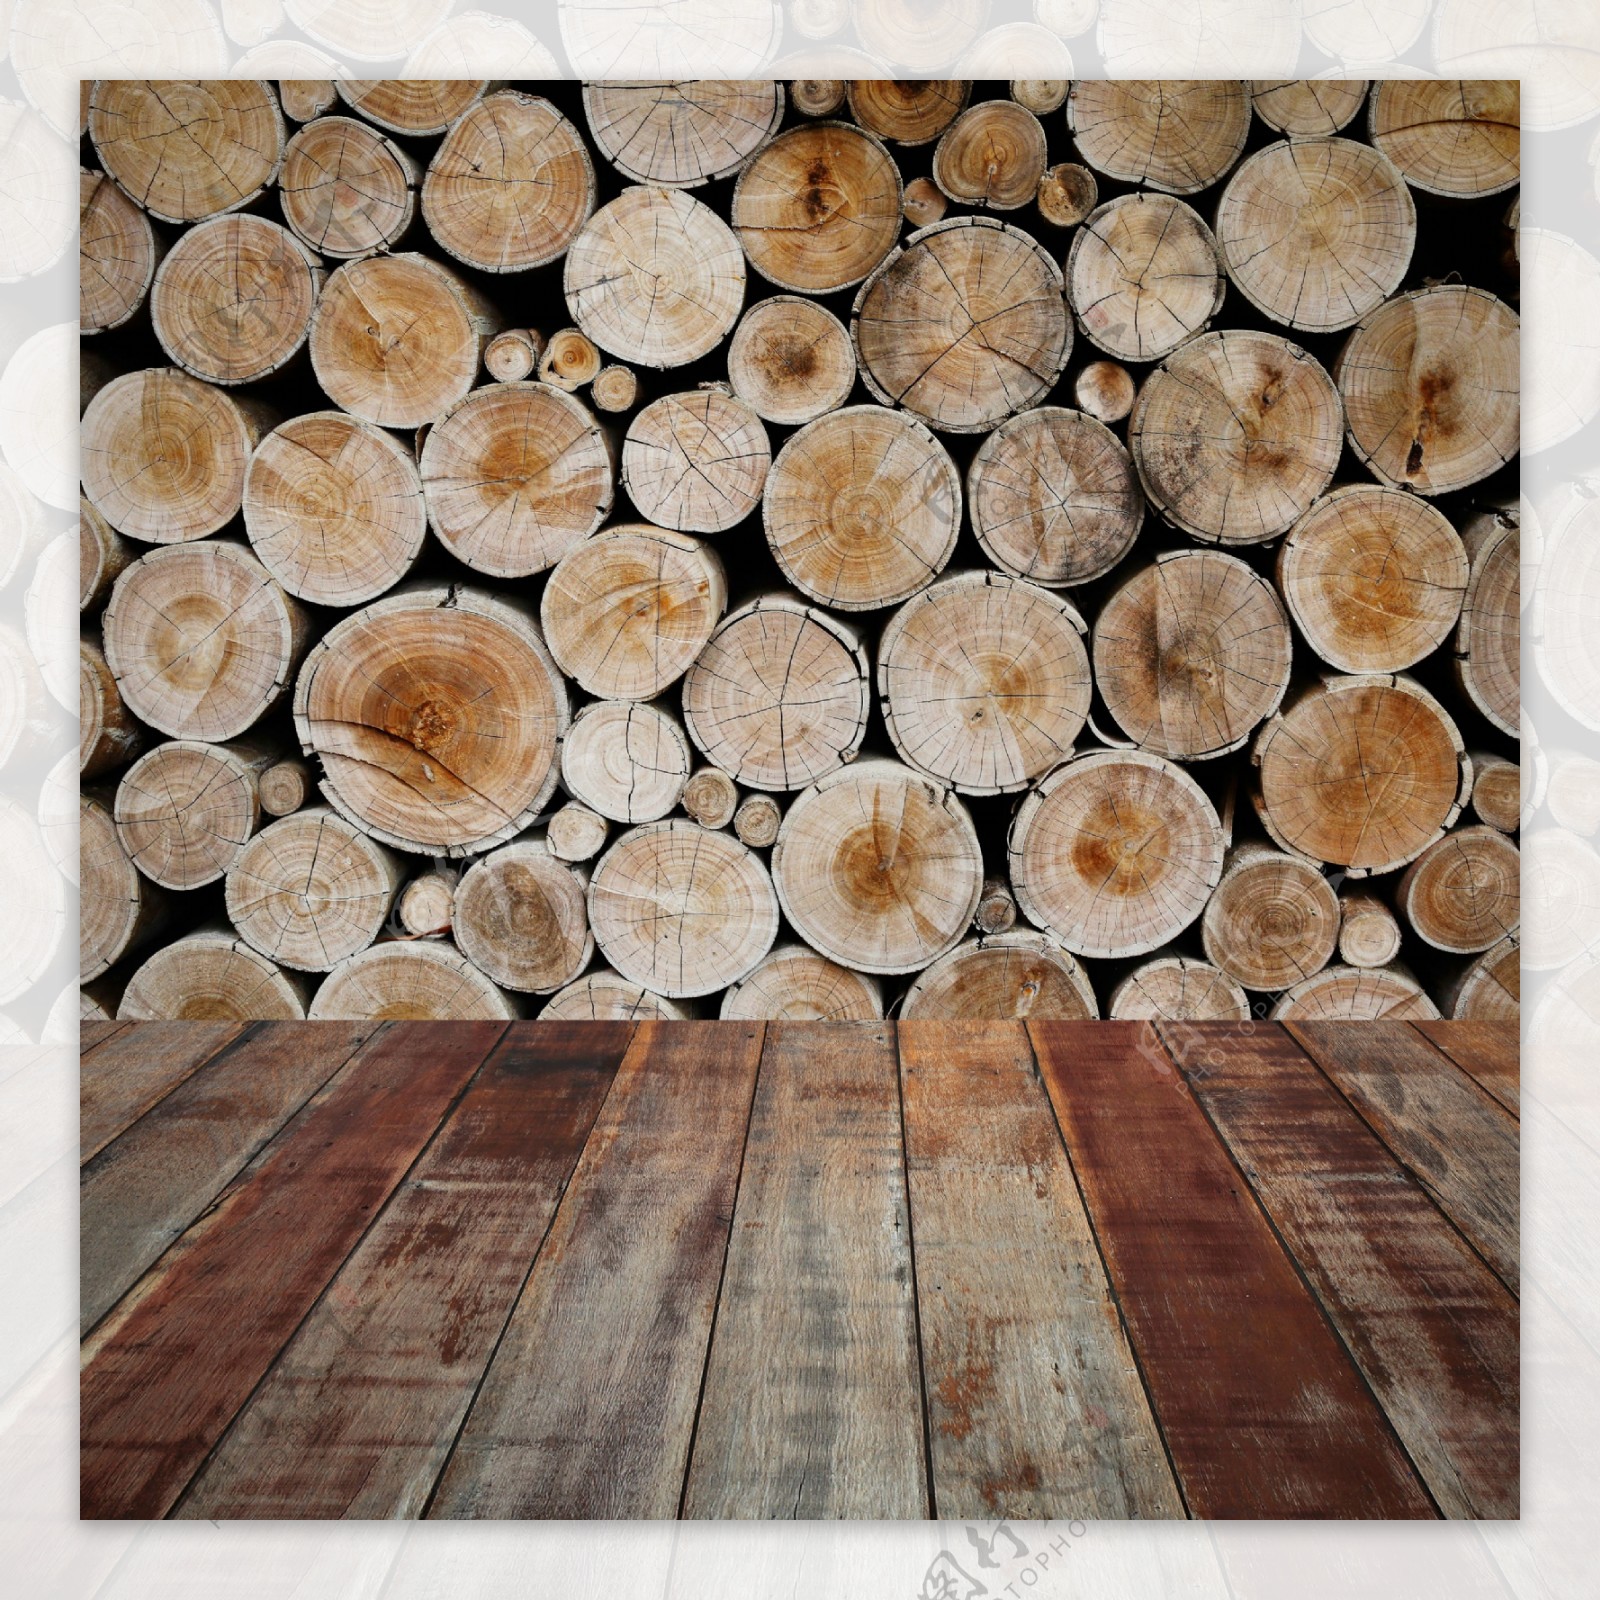 怀旧木板木质背景高清图片